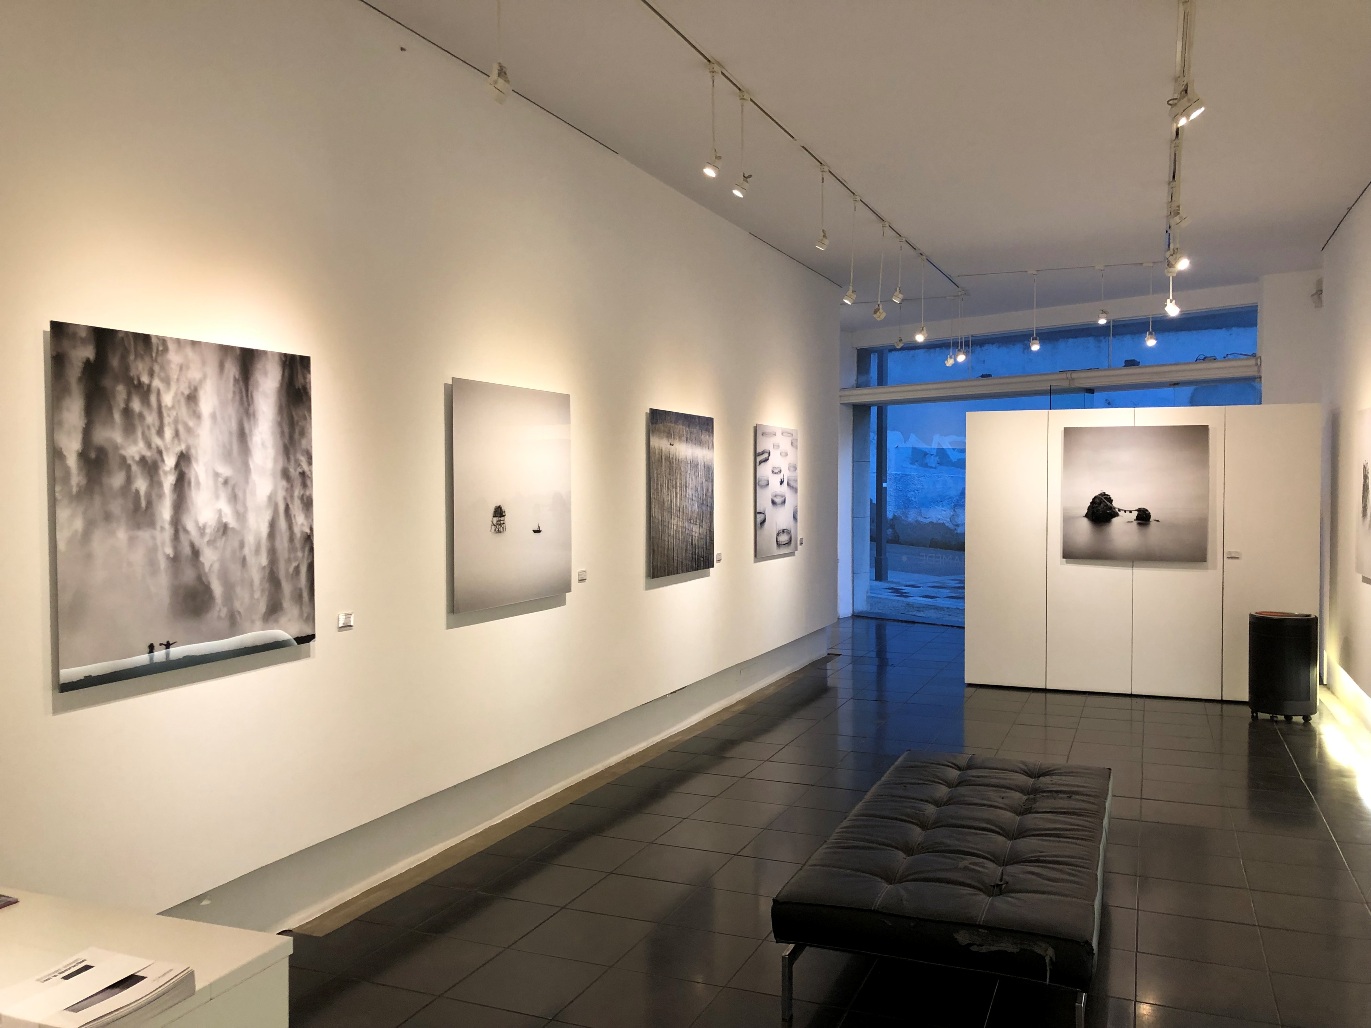 Galeria de São Mamede - Centros de exposições & Galerias de arte